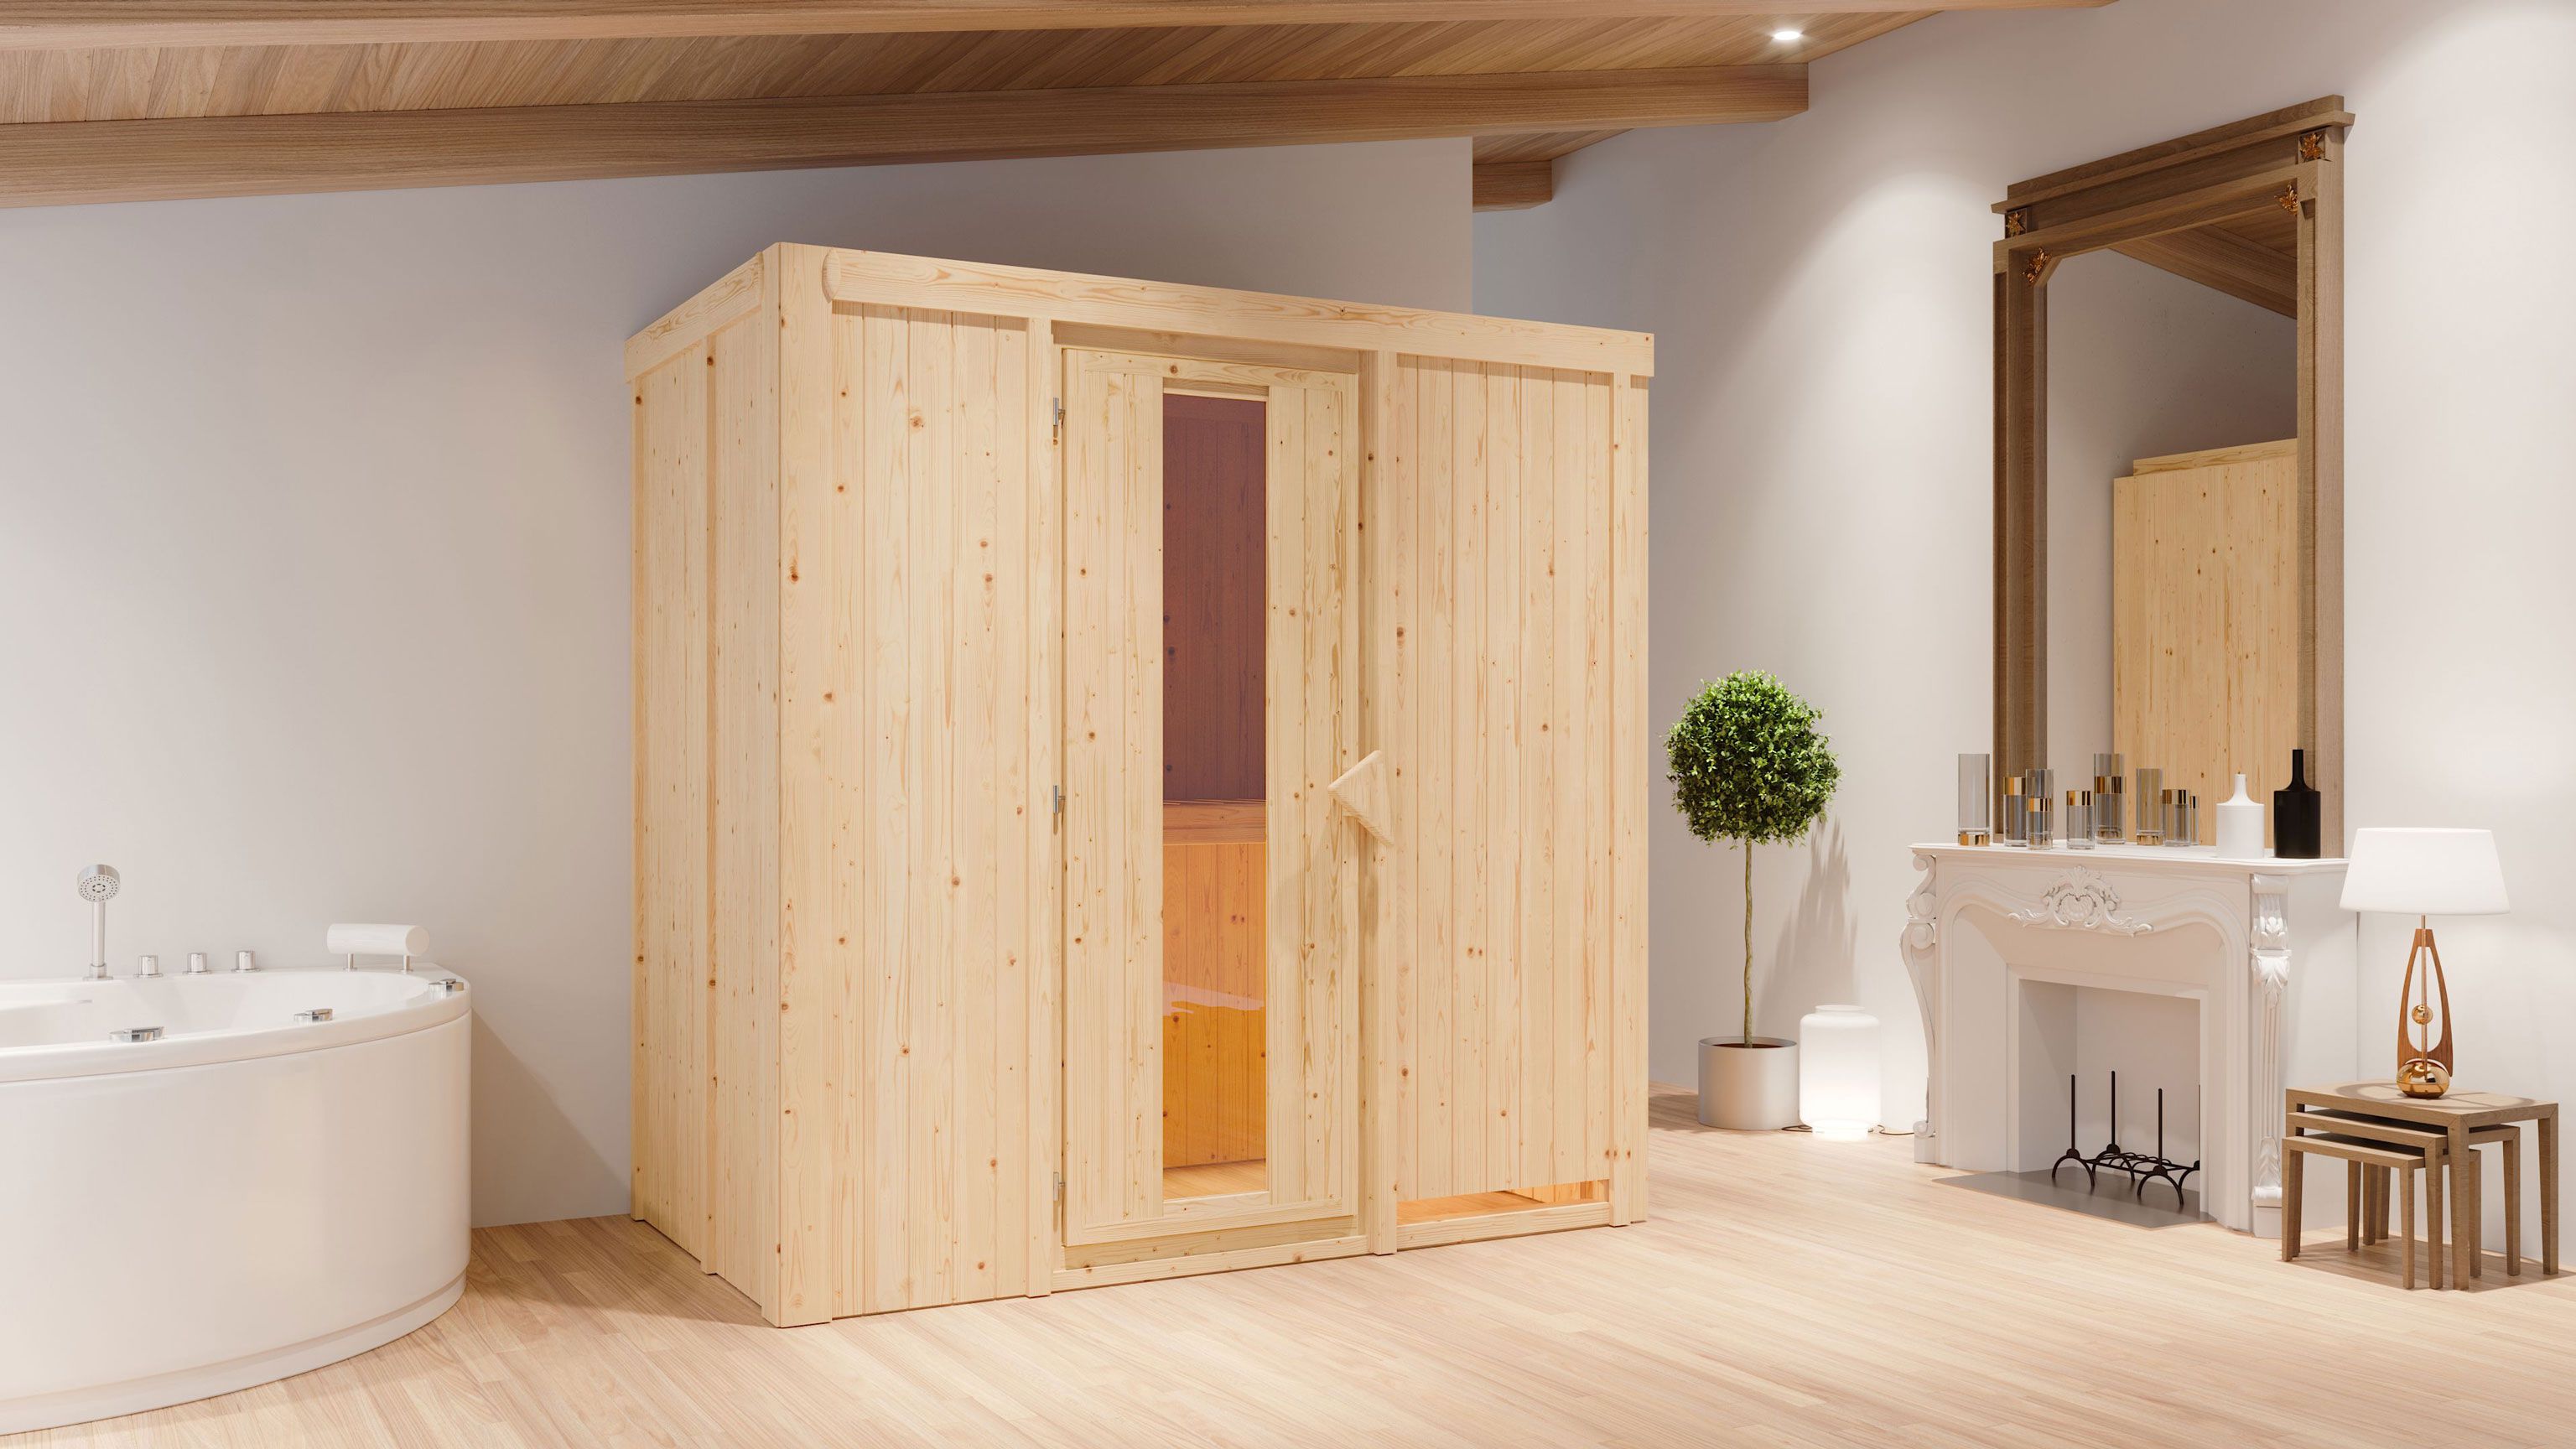 SET-sauna "Eeli" met energiebesparende deur - kleur: naturel, BIO 9 kW kachel - 196 x 118 x 198 cm (B x D x H)